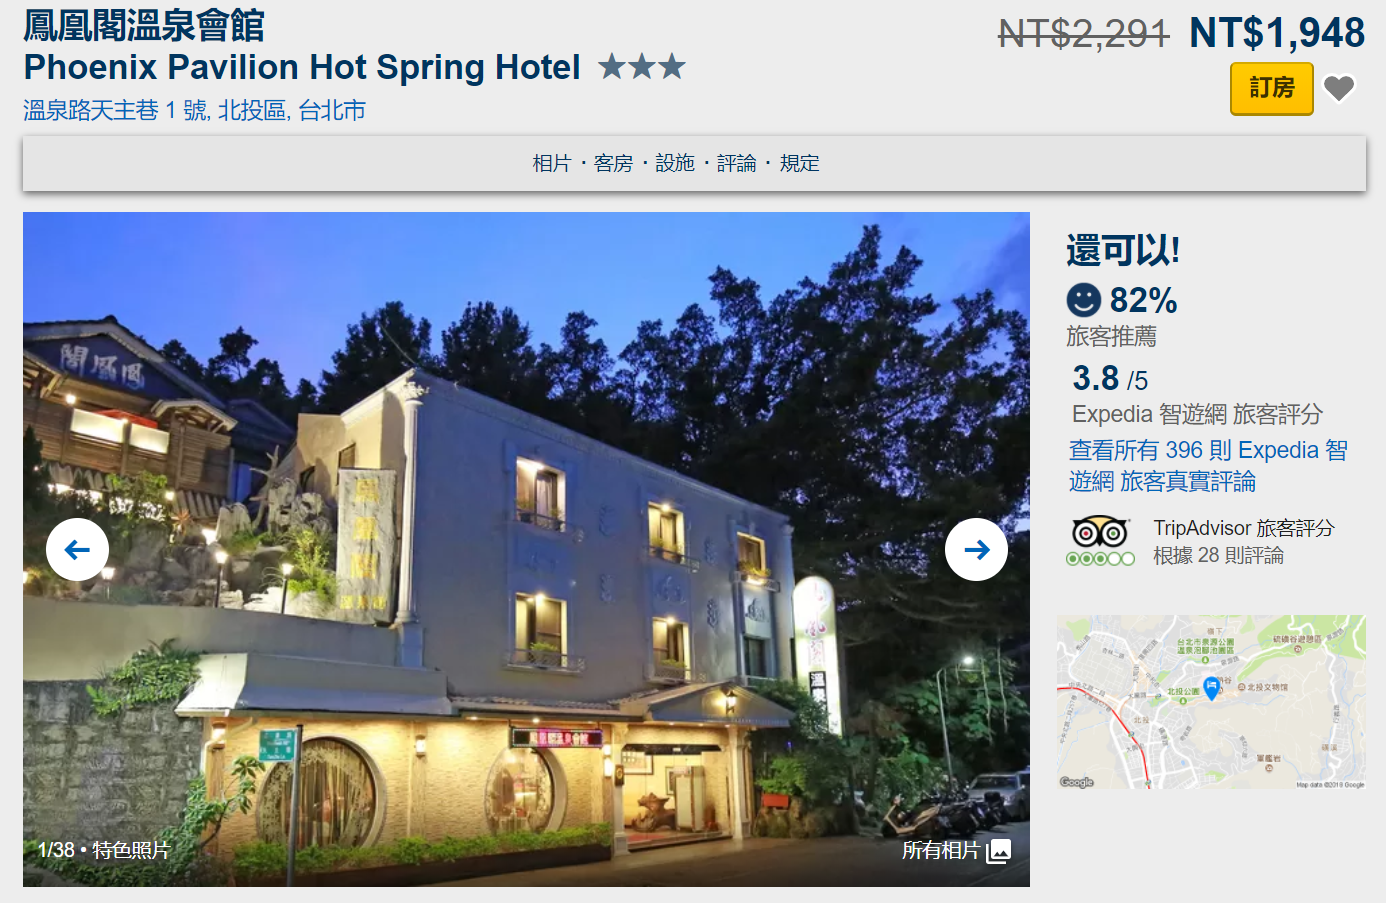 台北、新北溫泉飯店。許願名單與網路評價｜Expedia全台溫泉飯店促銷8折起